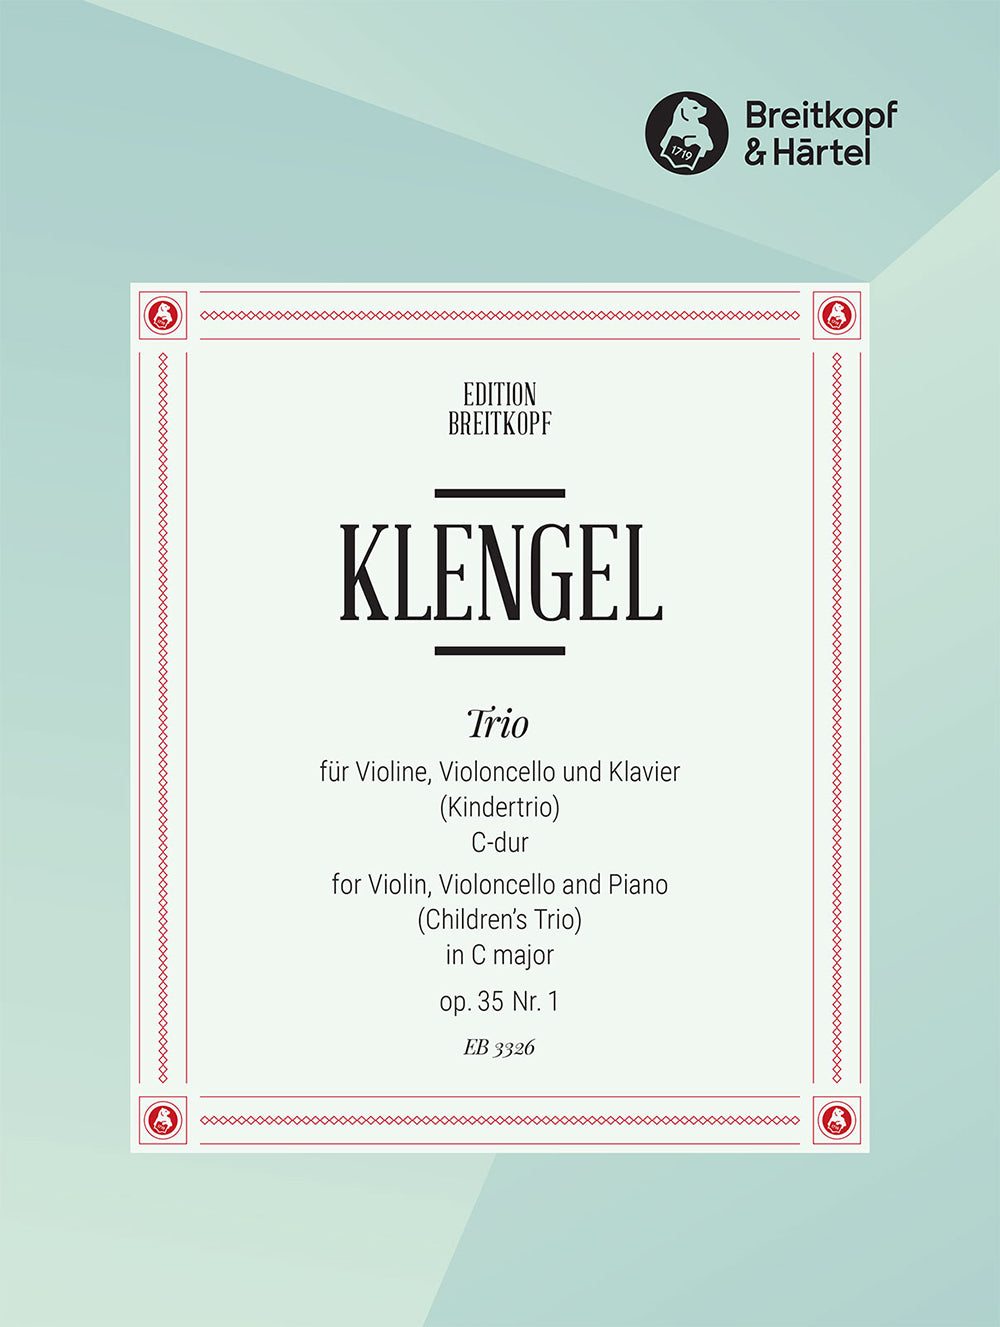 Klengel Children's Trio in C, Op. 35 #1